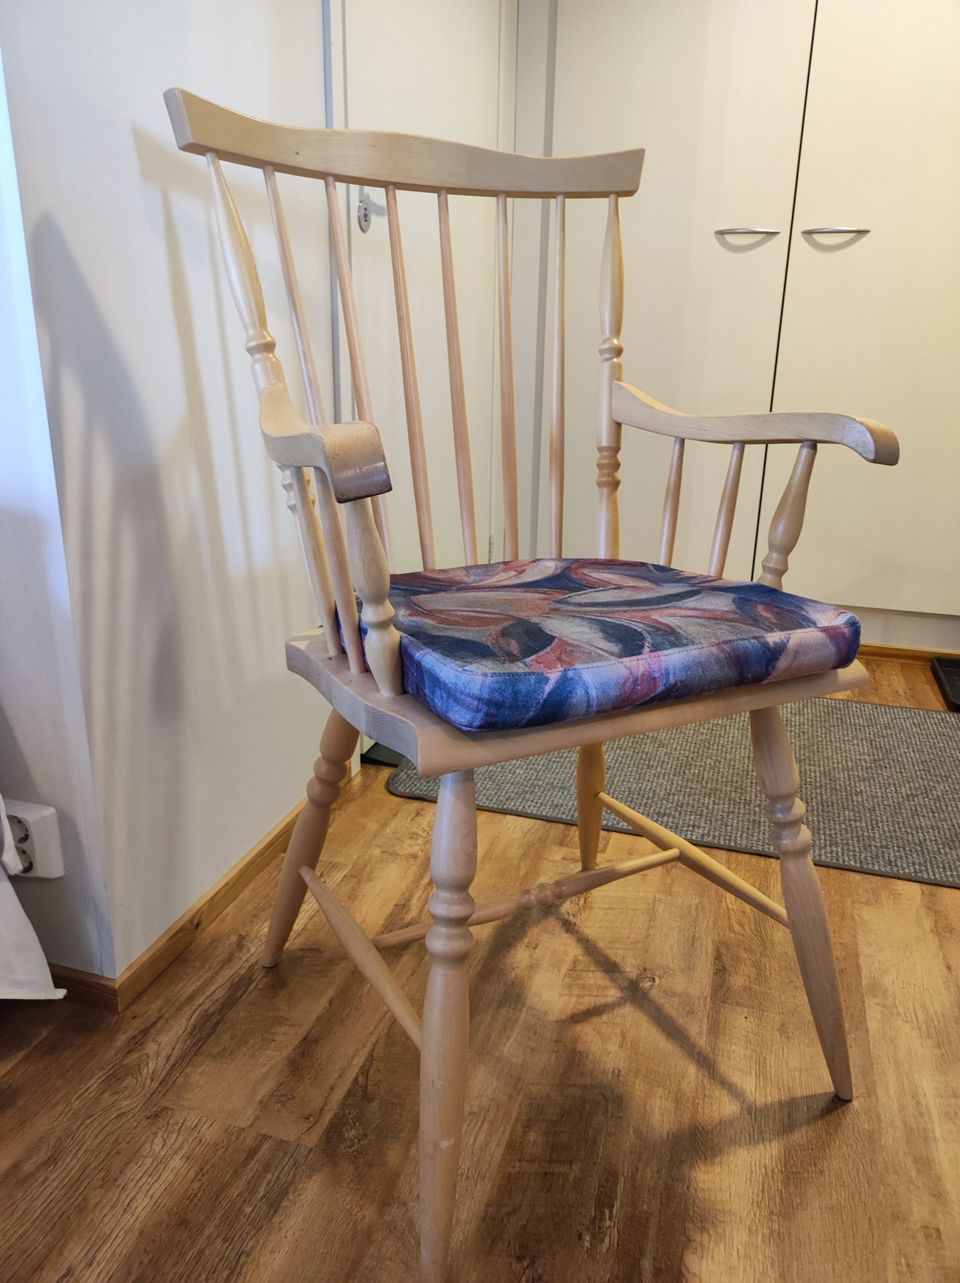 Tukeva geriatrinen tuoli